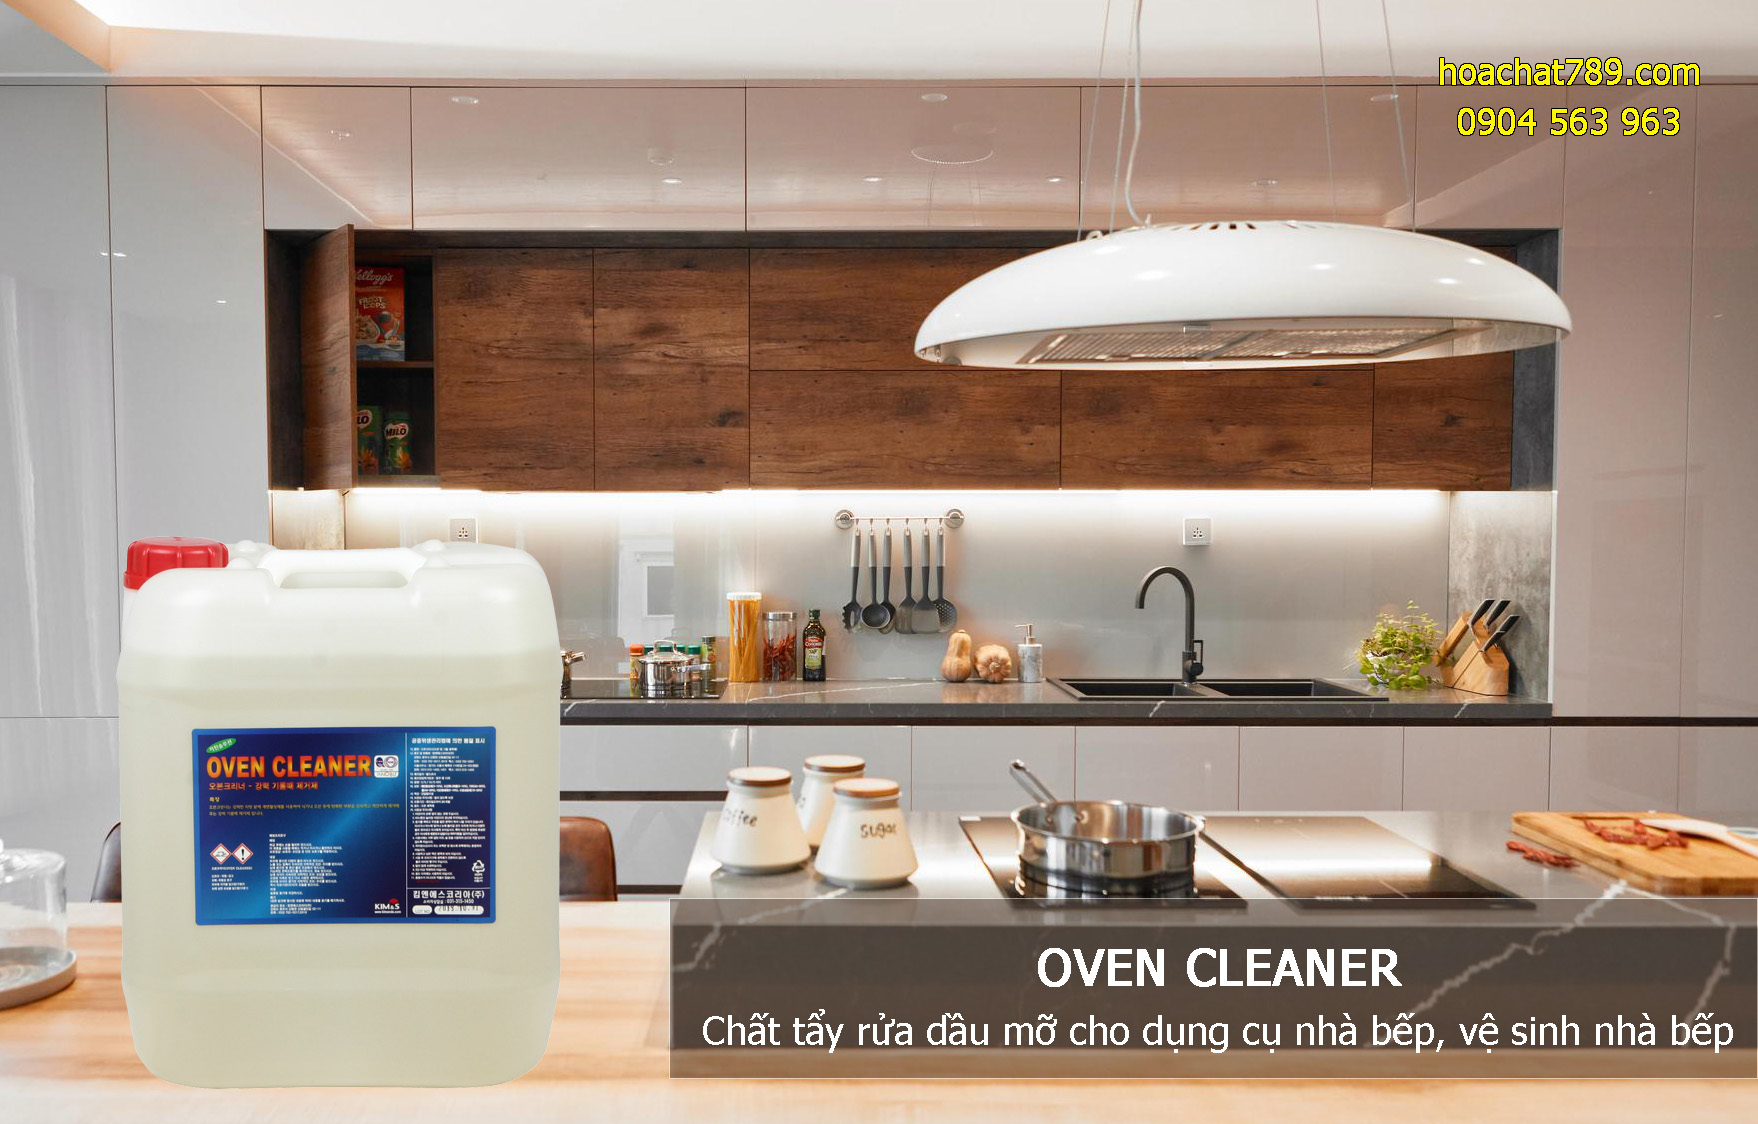 Oven Cleaner Chất tẩy rửa dầu mỡ cho dụng cụ nhà bếp, vệ sinh nhà bếp